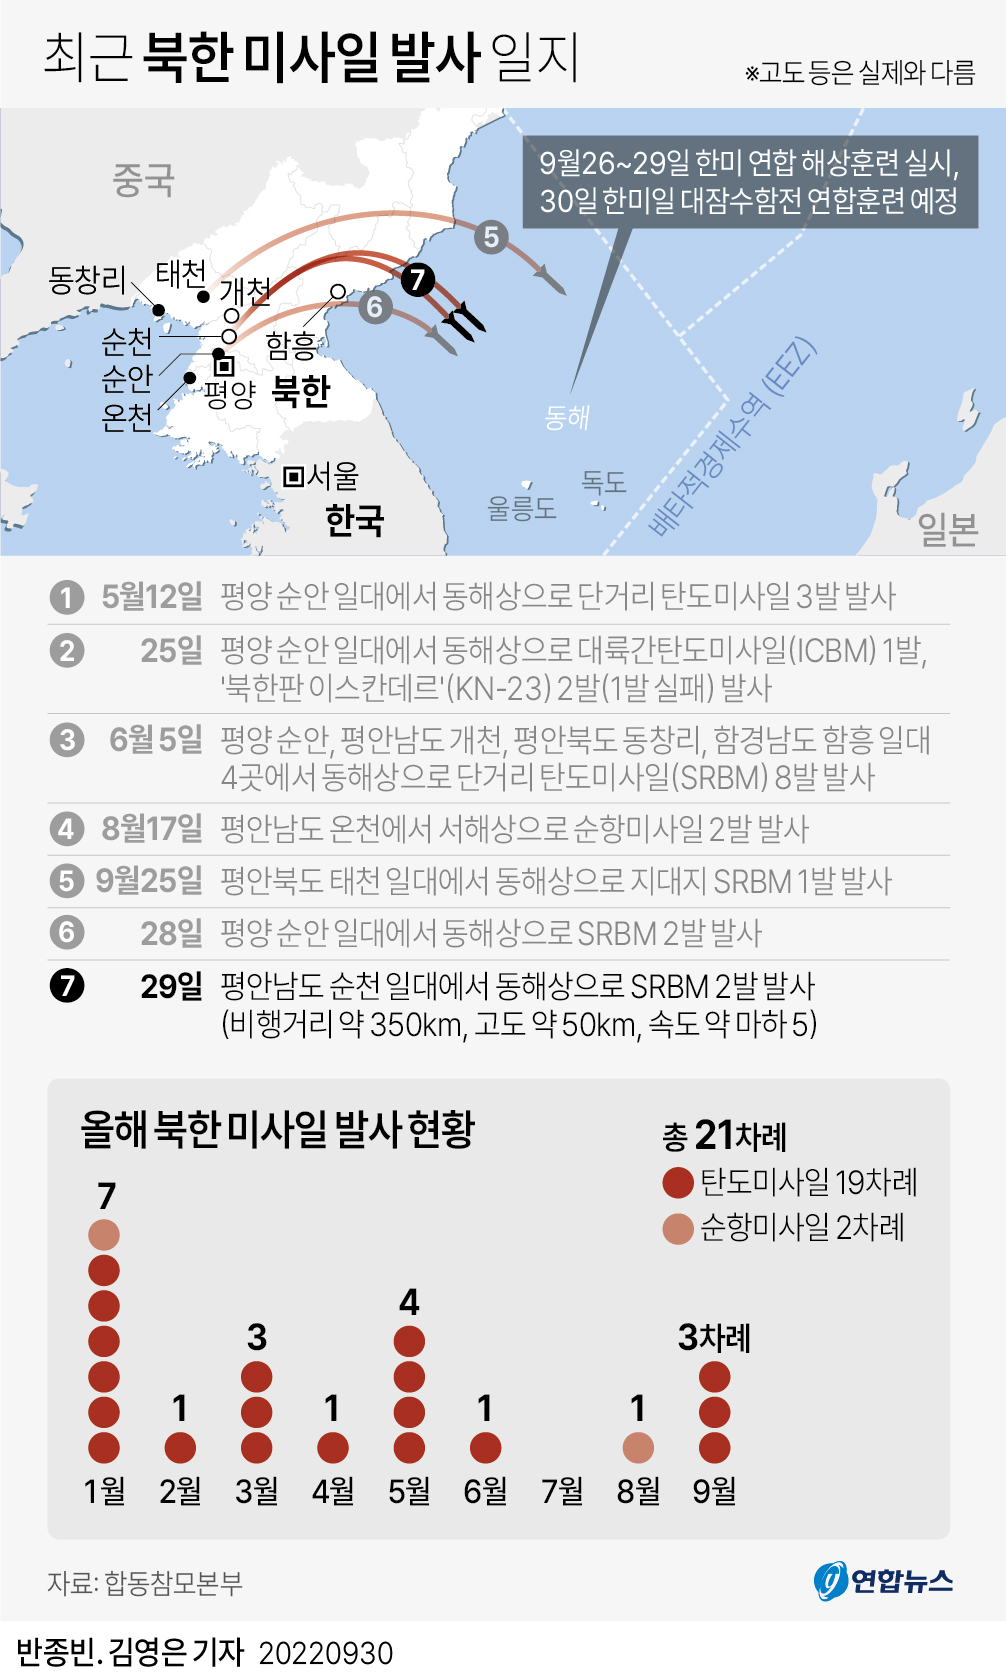 (서울=연합뉴스) 김영은 기자 = 합동참모본부는 29일 오후 8시 48분께부터 8시 57분께까지 북한이 평안남도 순천 일대에서 동해상으로 단거리 탄도미사일(SRBM) 2발을 발사한 것을 포착했다고 밝혔다.